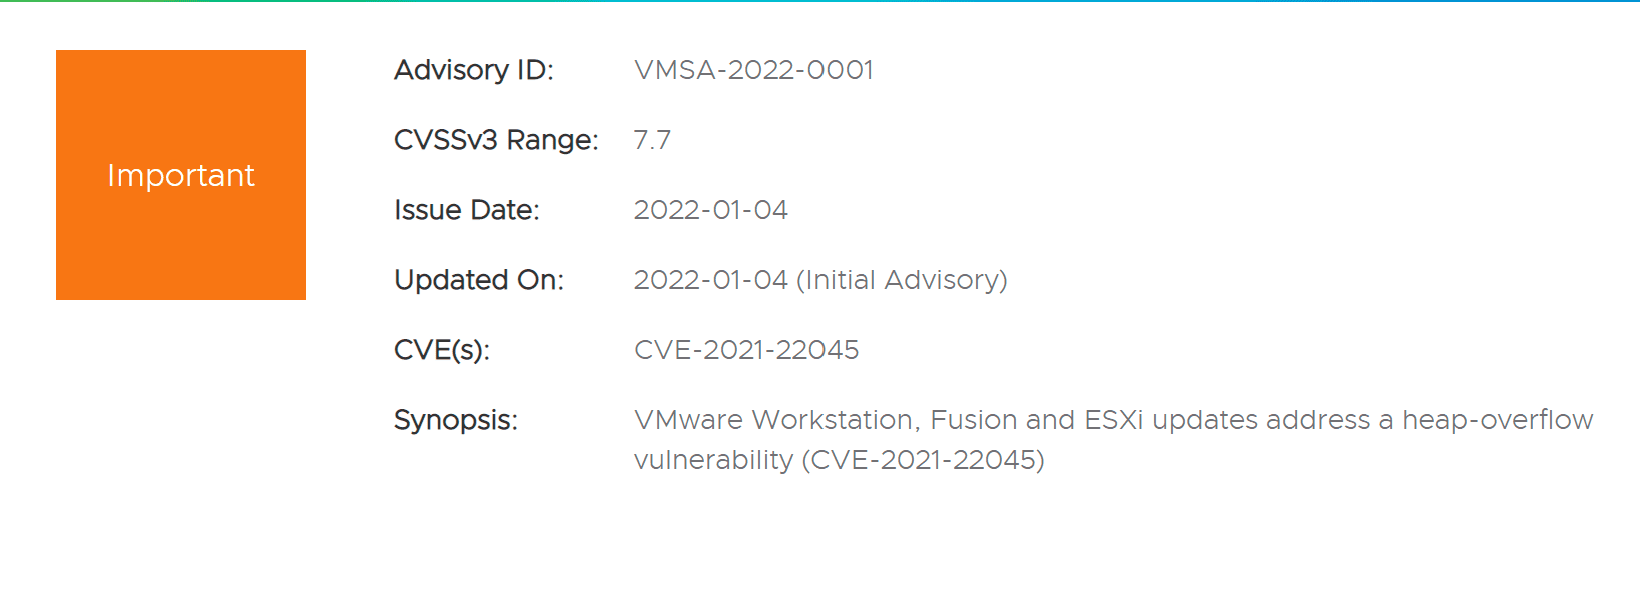 CVE-2021-22045